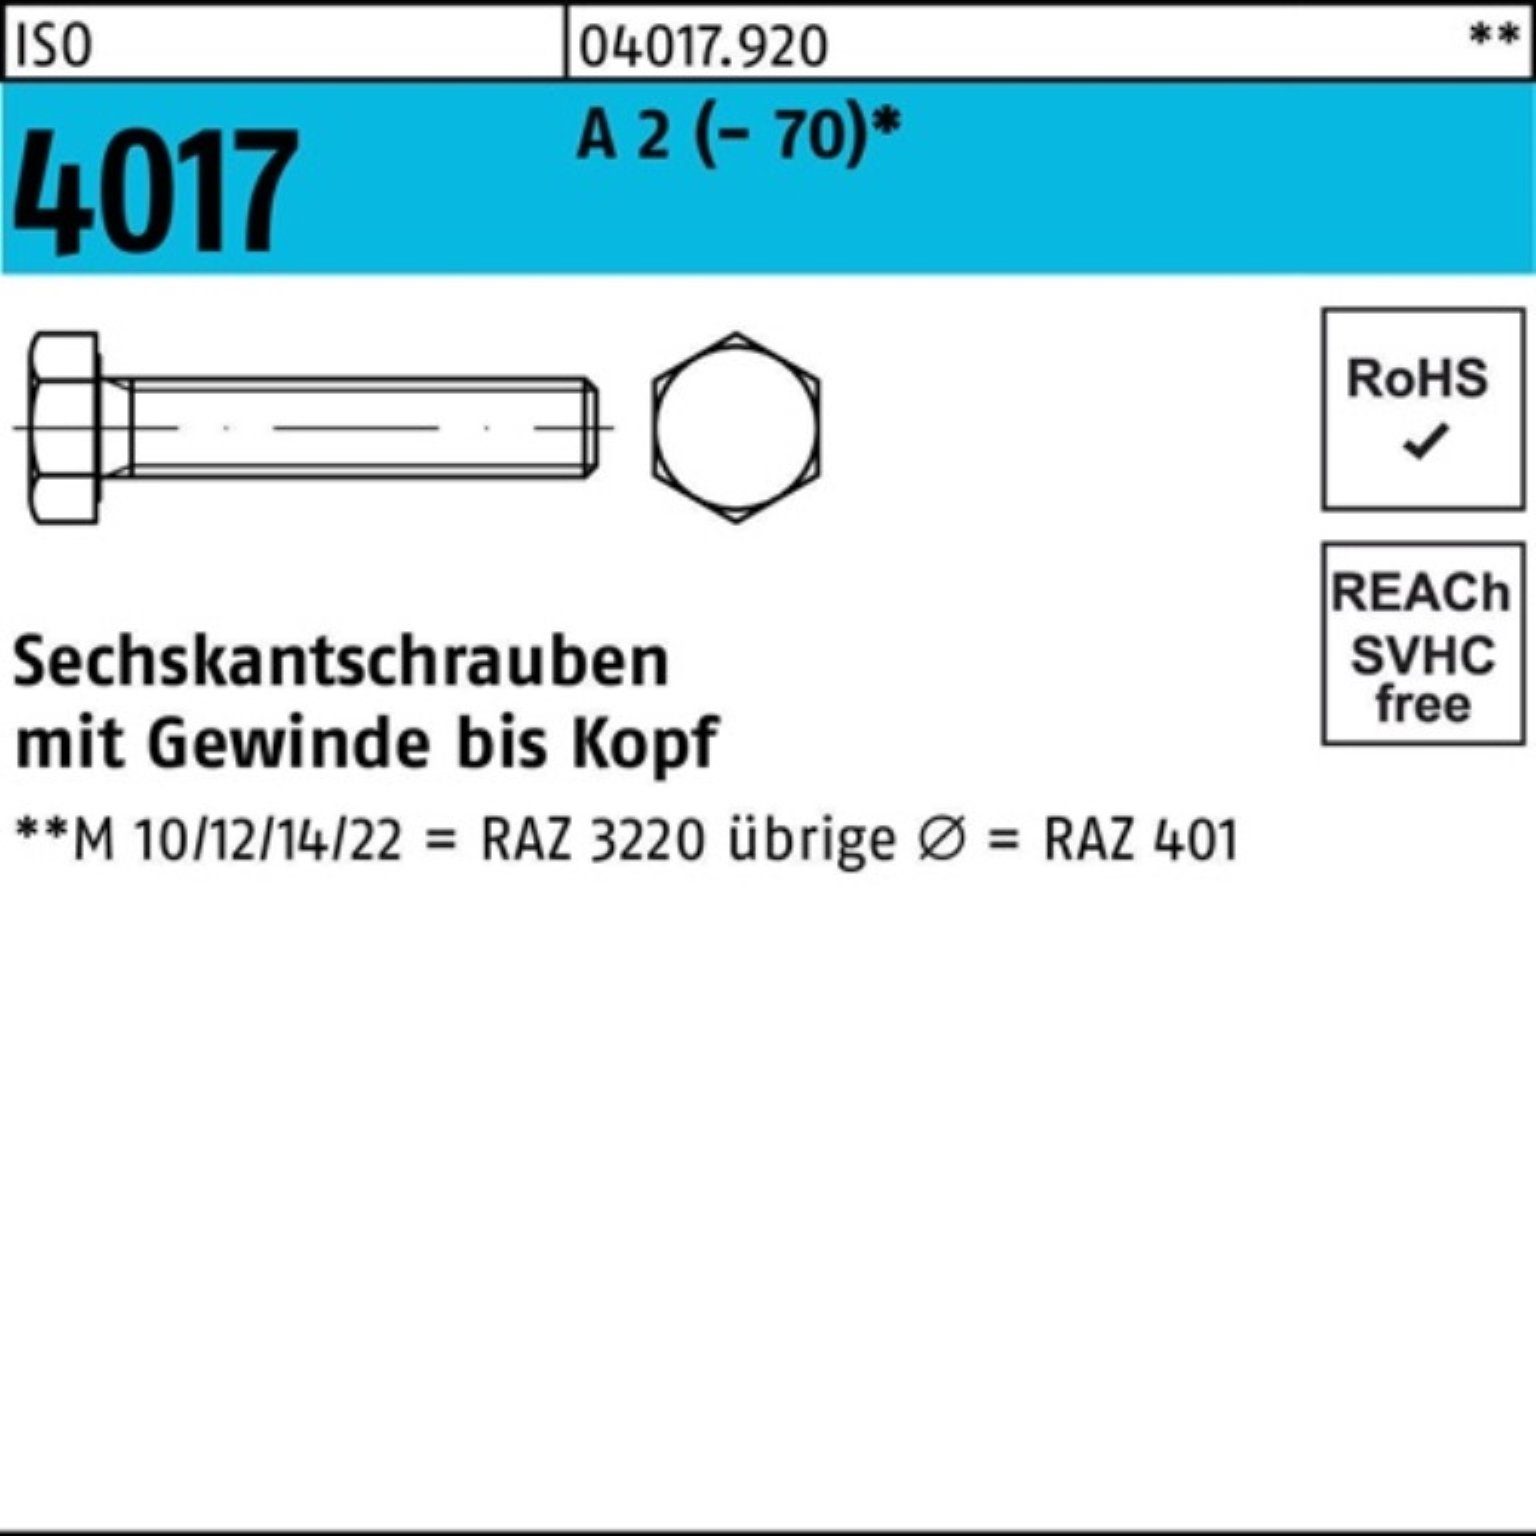 Bufab Sechskantschraube 100er Pack Sechskantschraube ISO 4017 VG M3x 30 A 2 (70) 100 Stück